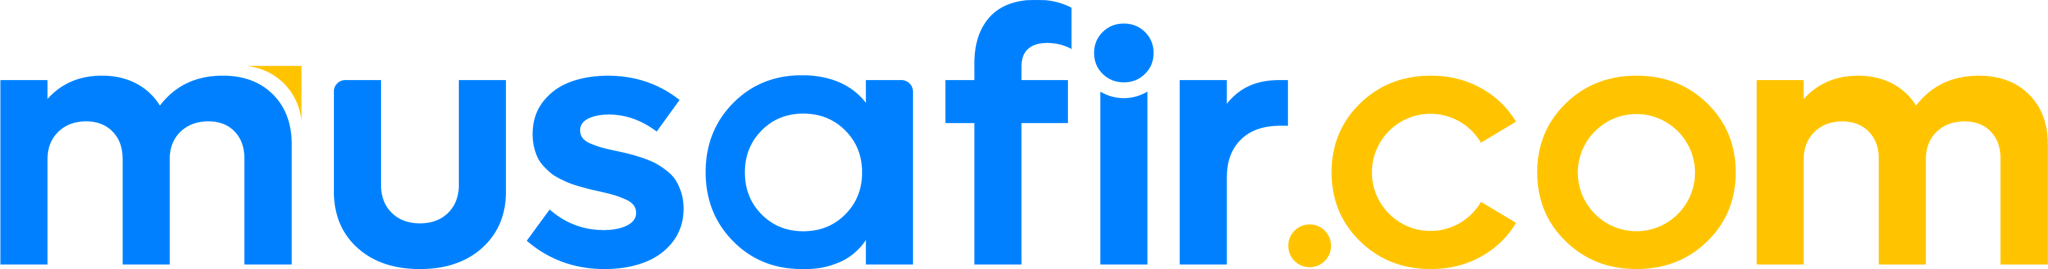 Musafir.com Brand Logo